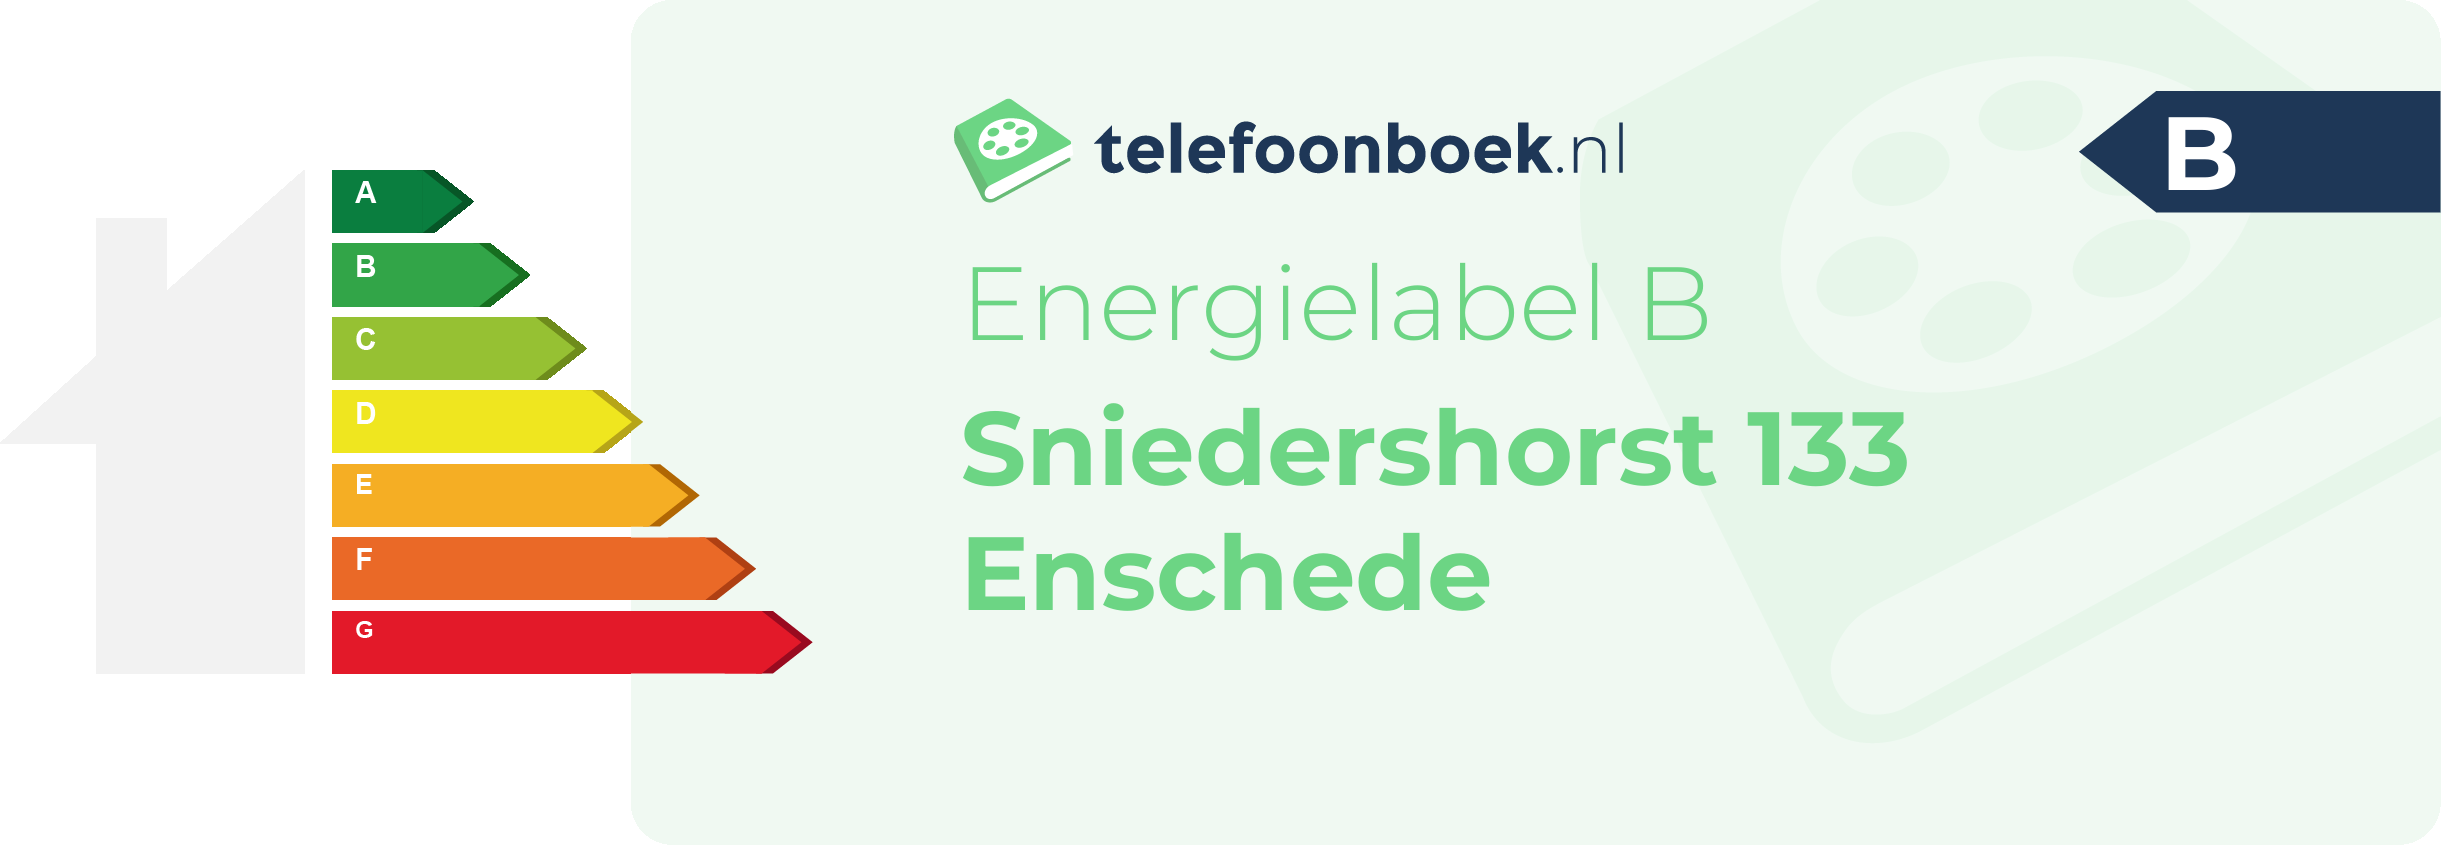 Energielabel Sniedershorst 133 Enschede